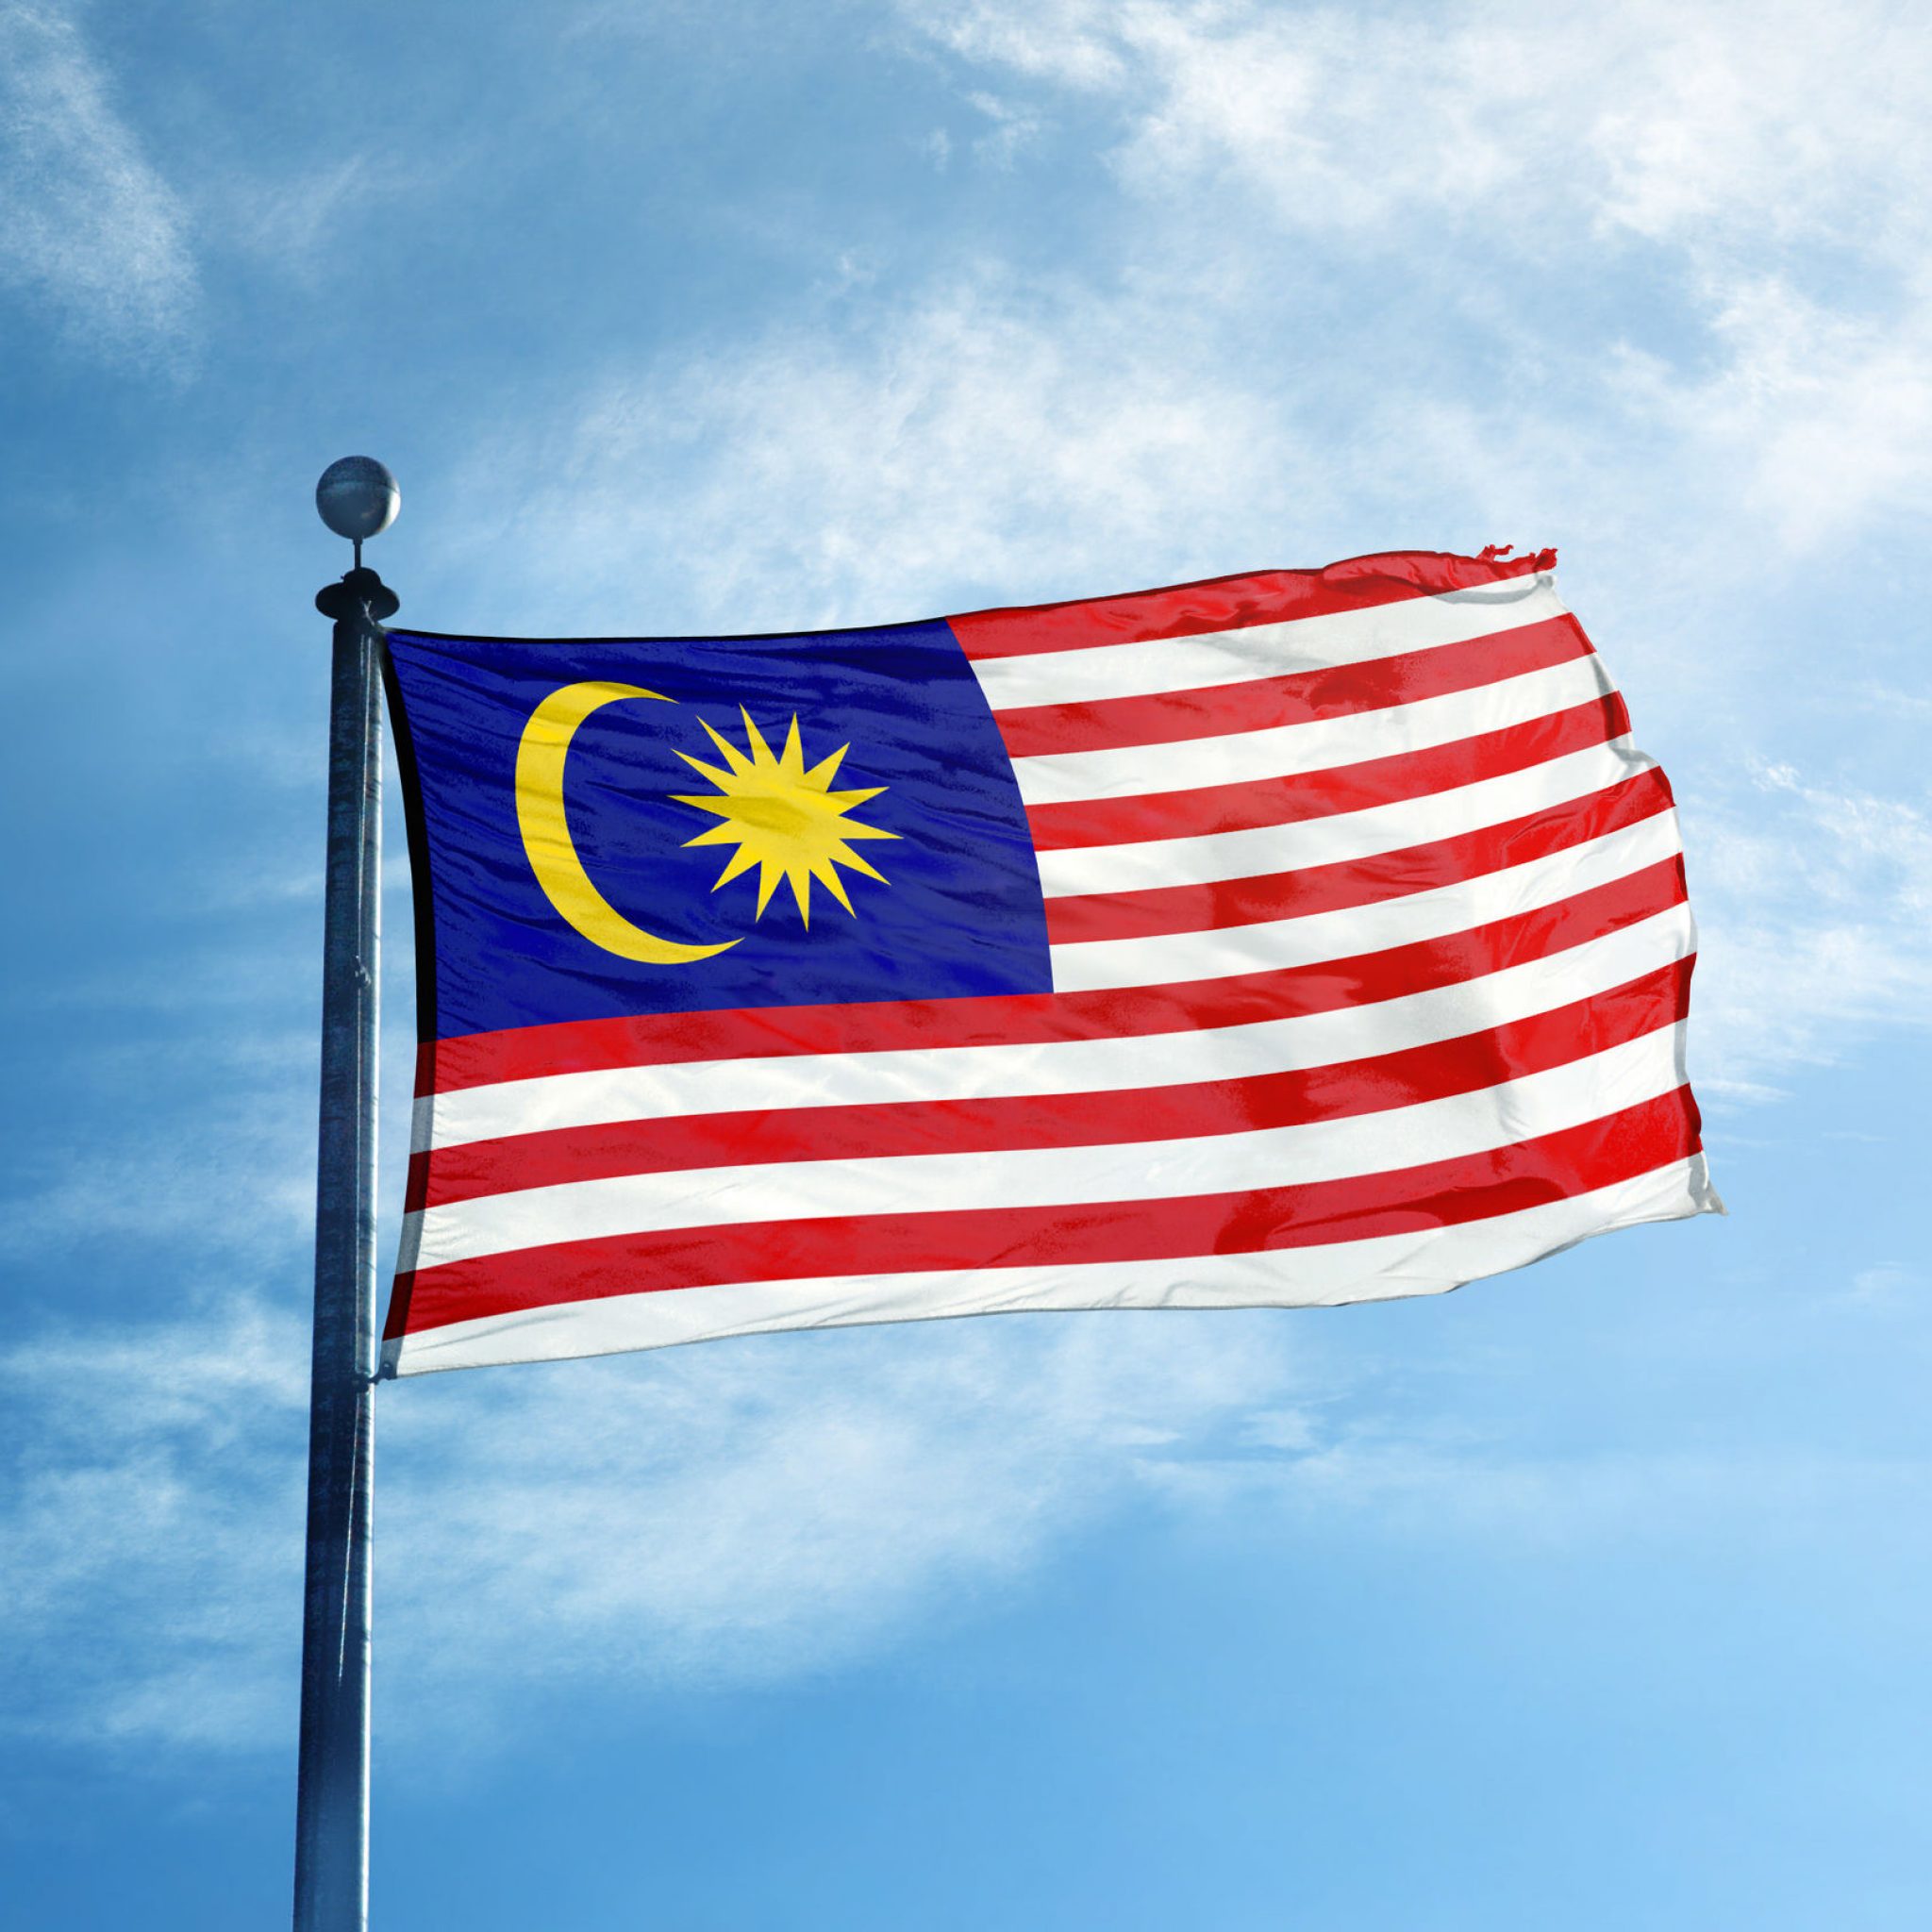 马来西亚允许中国供应商参与新的 5G 网络 – RCR Wireless News